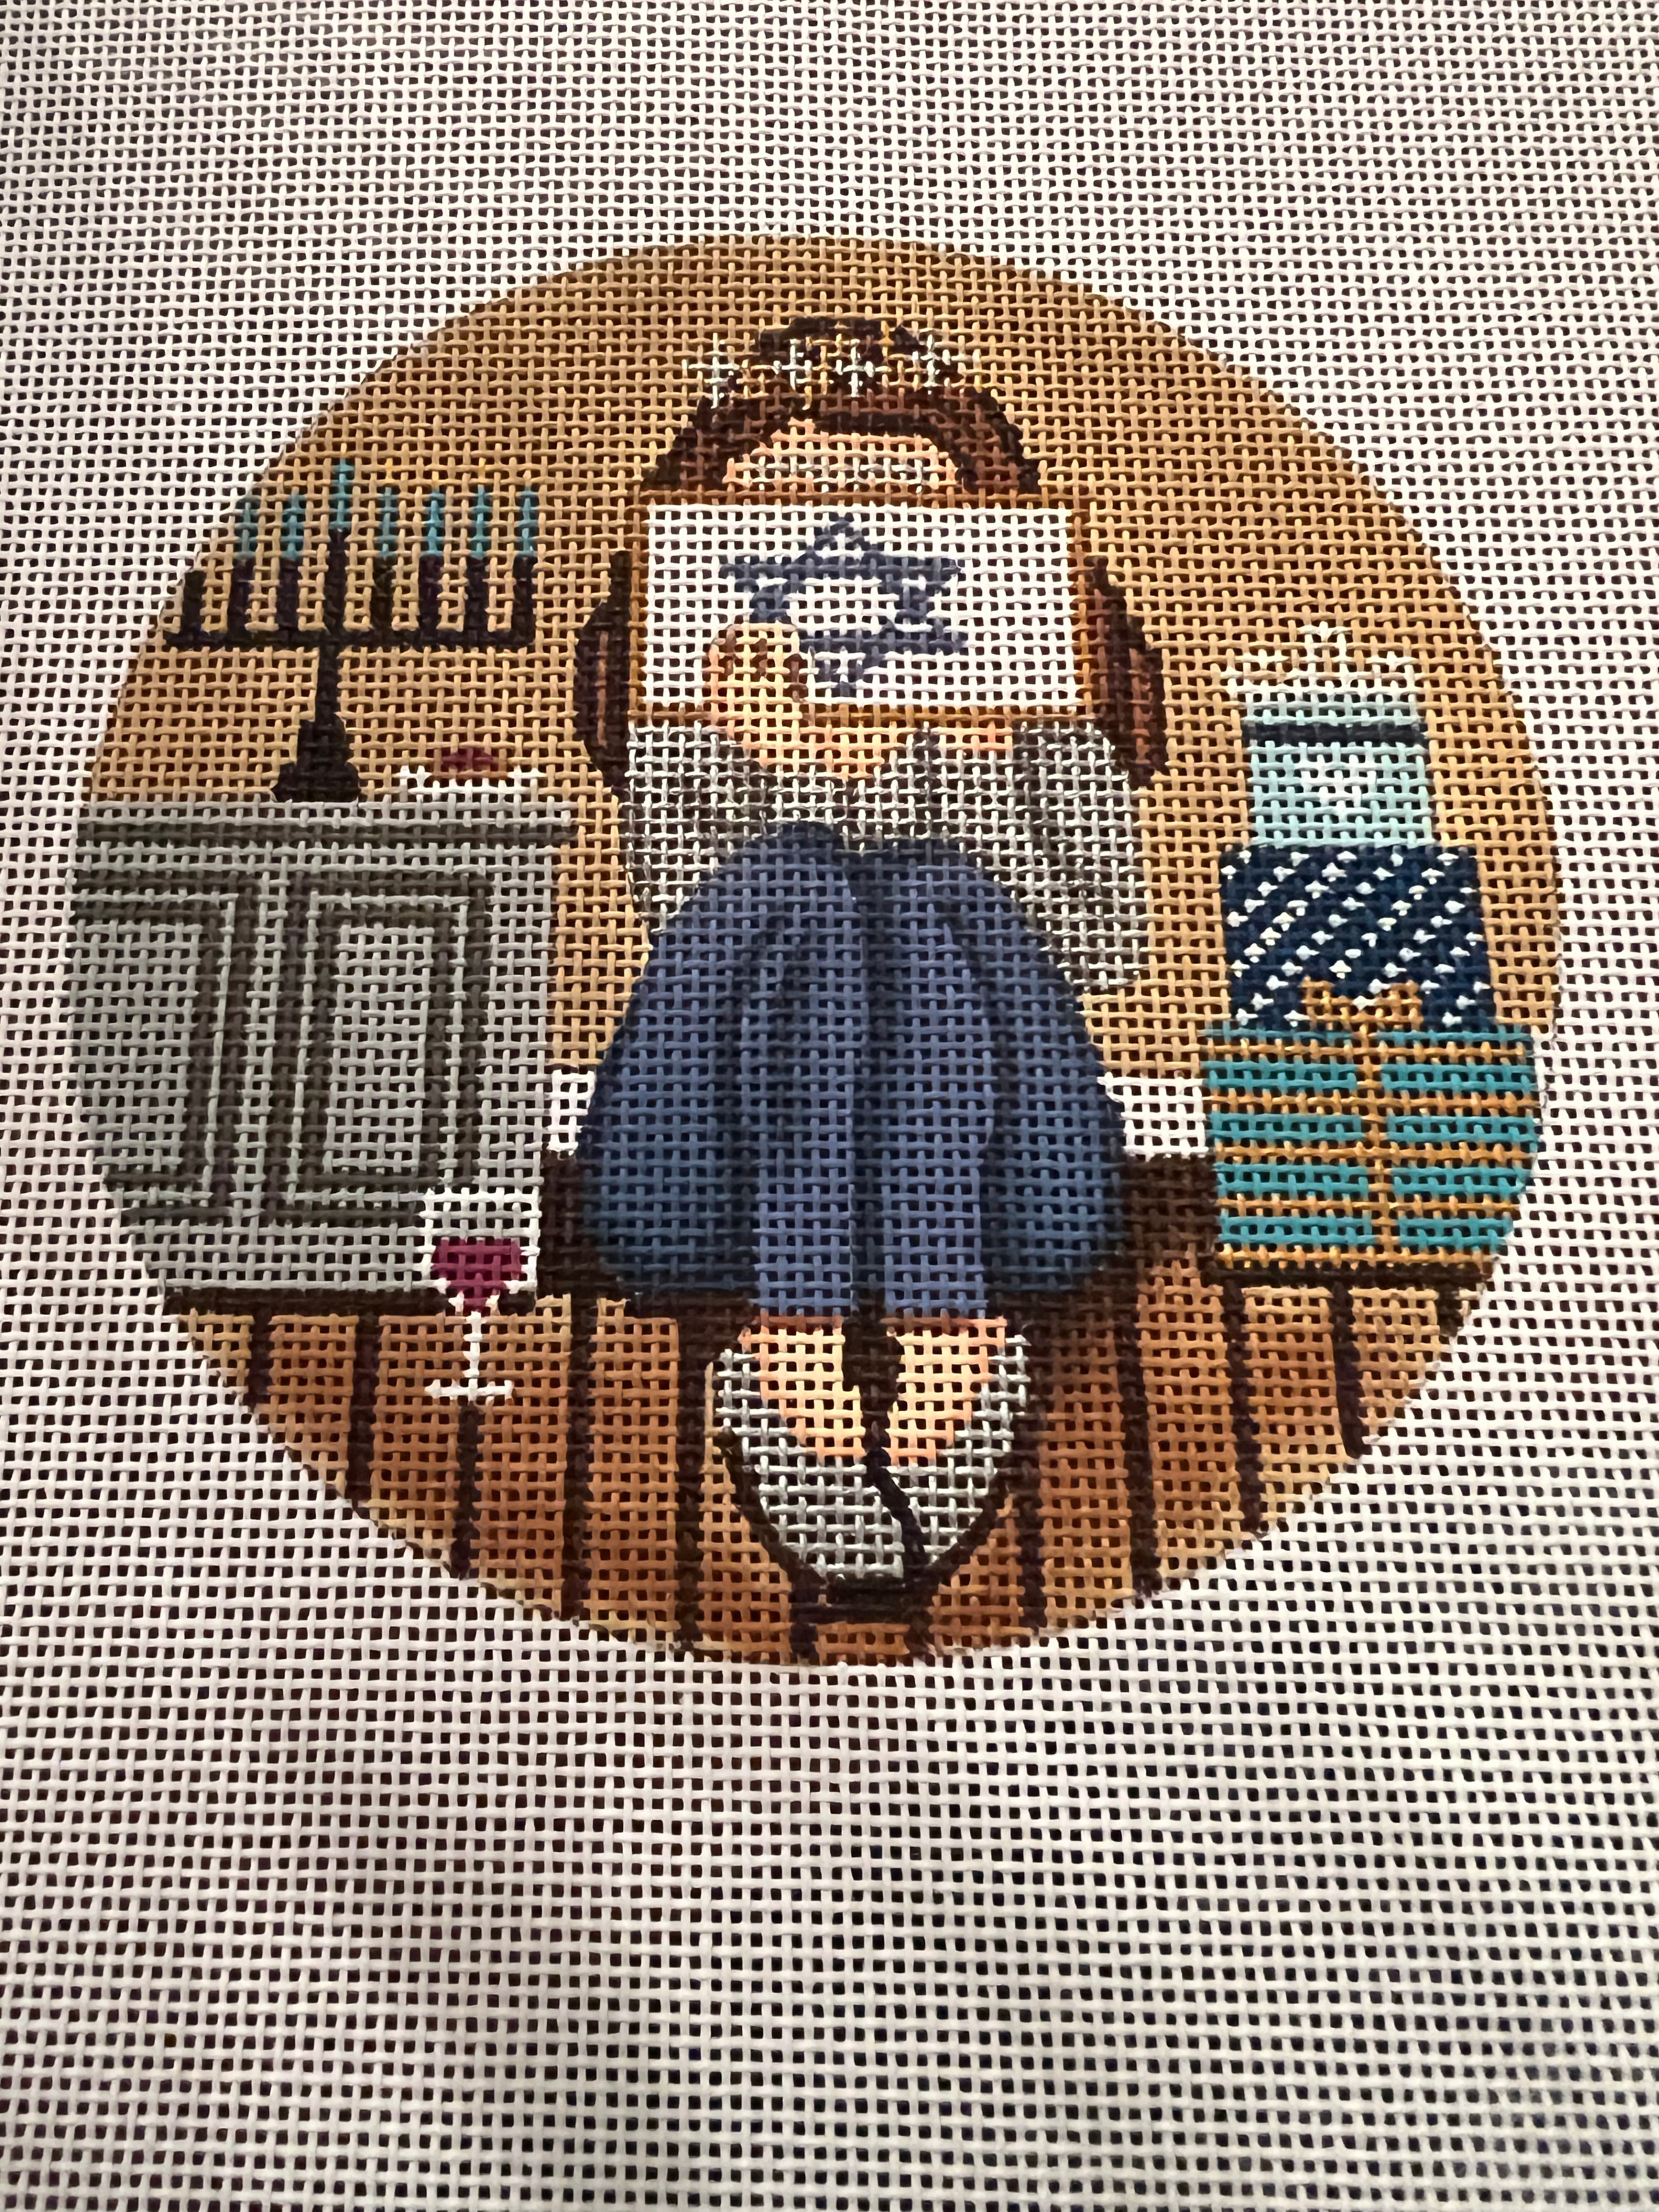 Girl Stitching Hanukkah Round GE GS197 PRE ORDER